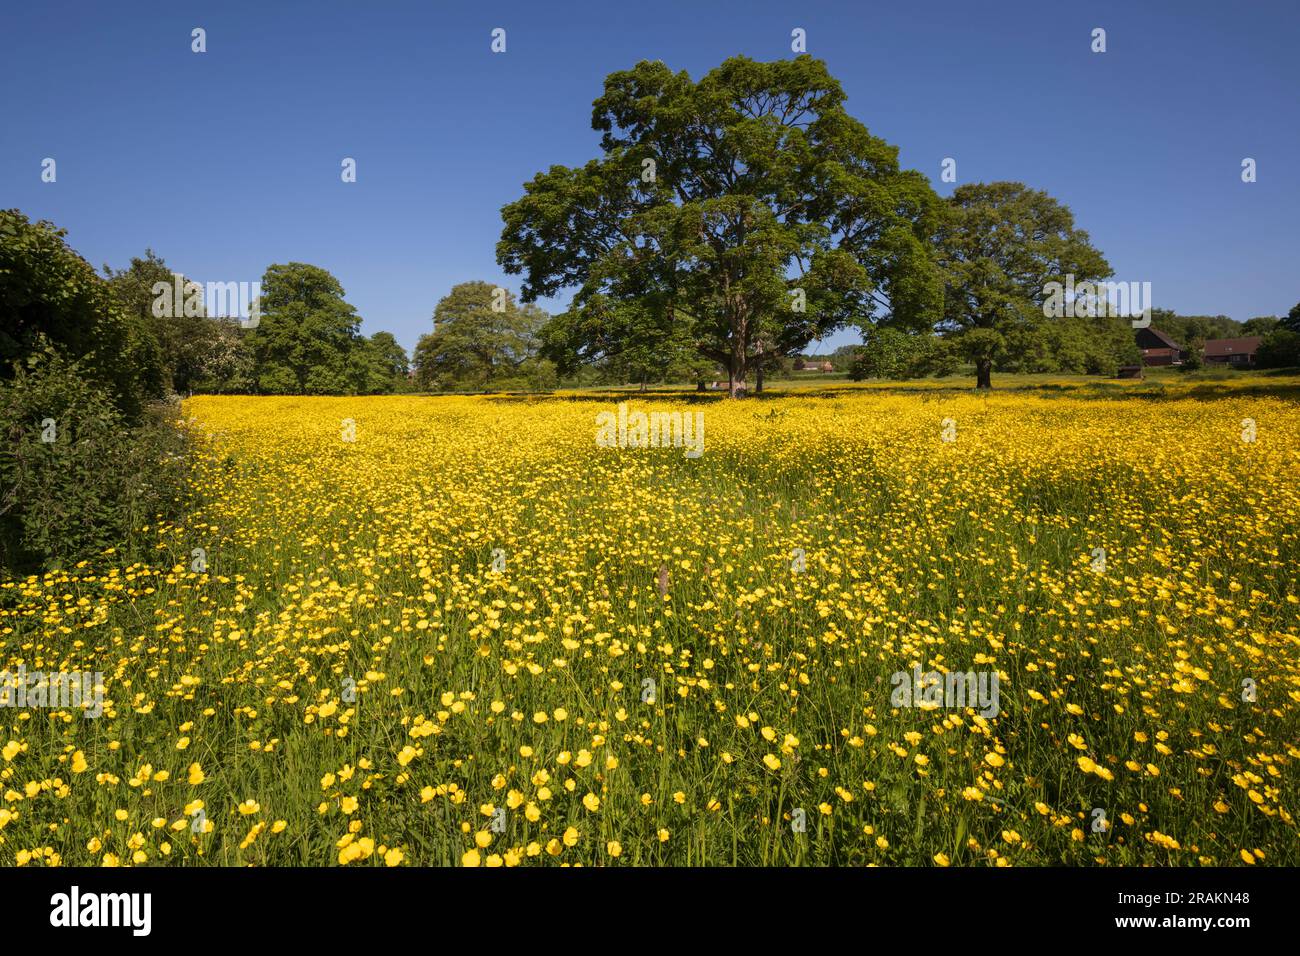 Auf einer Blumenwiese mit Eichenbäumen und blauem Himmel wachsende gelbe Butterblumen, Newbury, Berkshire, England, Vereinigtes Königreich, Europa Stockfoto